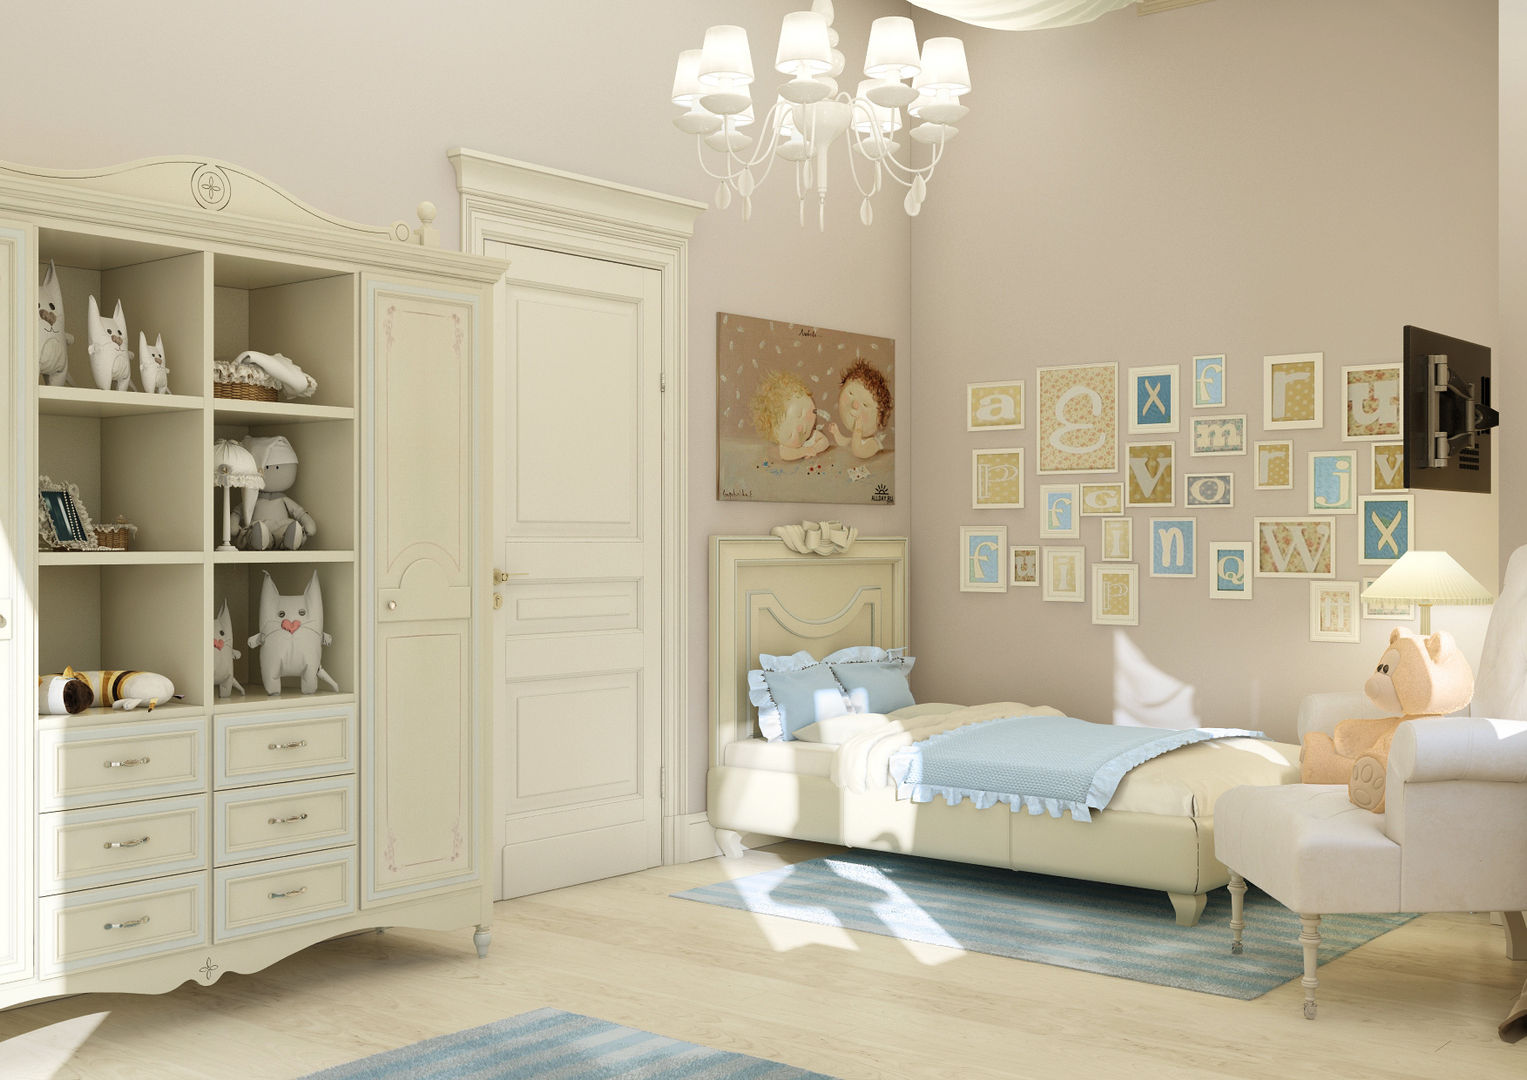 Дизайн коттеджа "Комната маленькой принцессы" Samarina projects Детская комнатa в классическом стиле